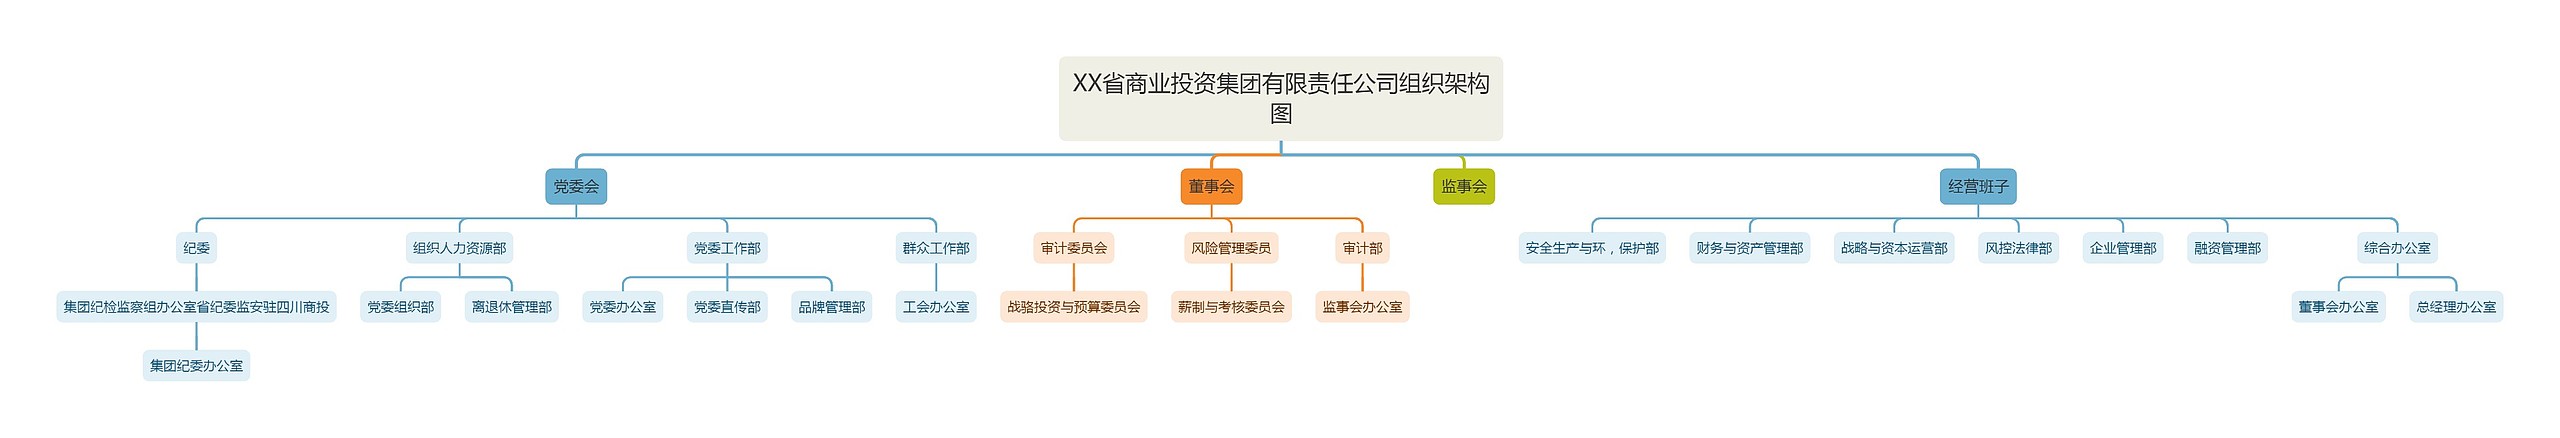 XX省商业投资集团有限责任公司组织架构图思维导图